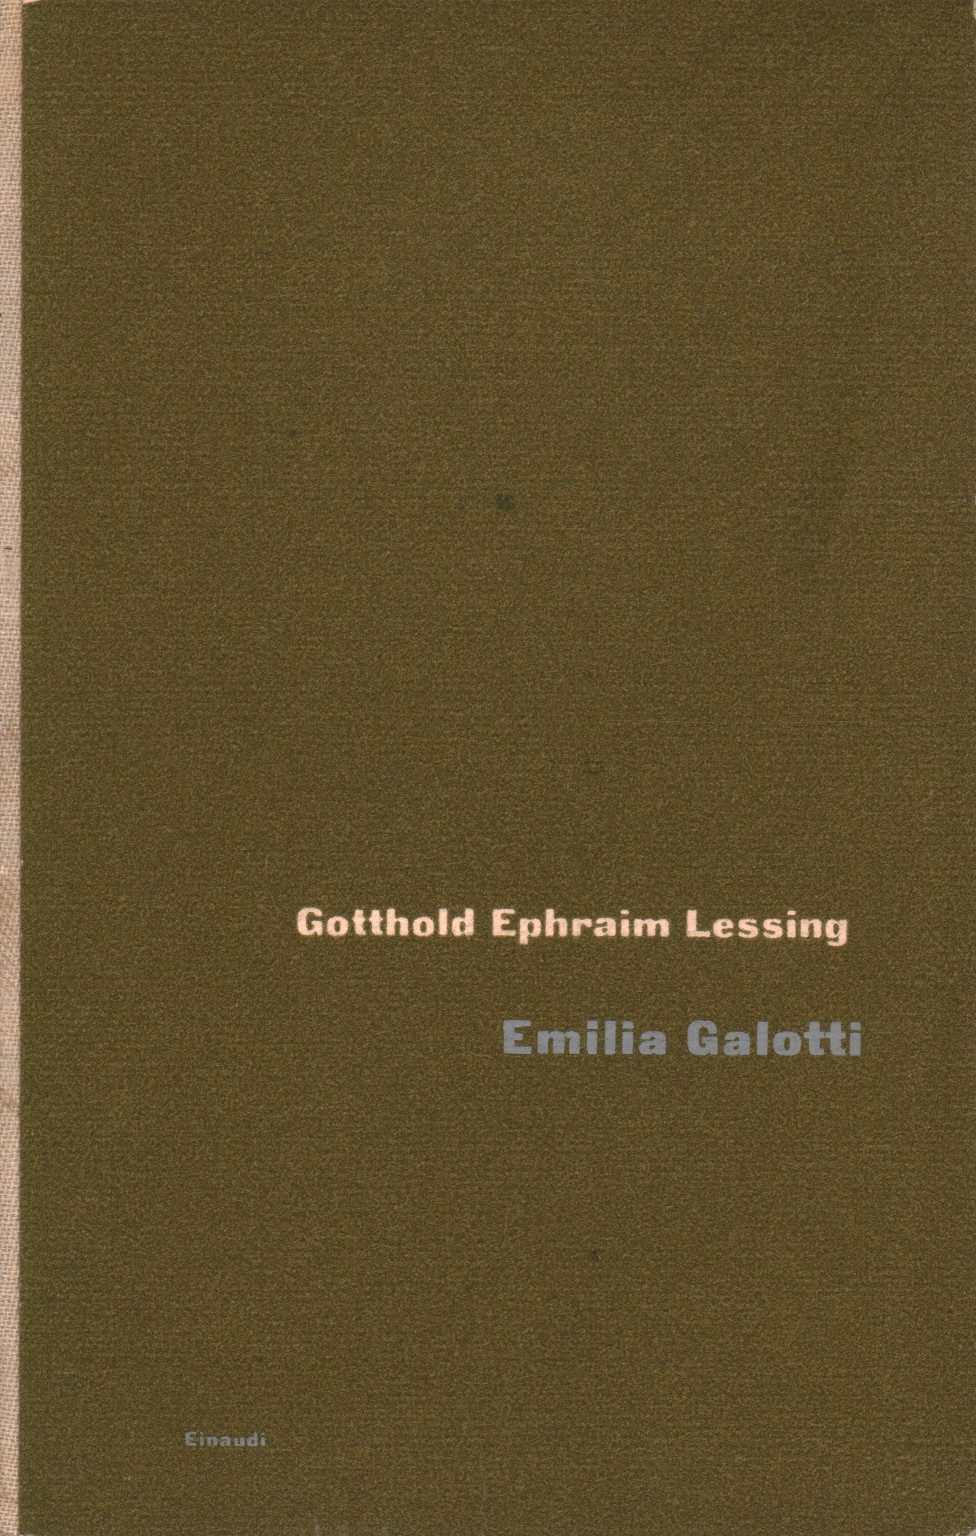 Emilia Galotti, s.a.